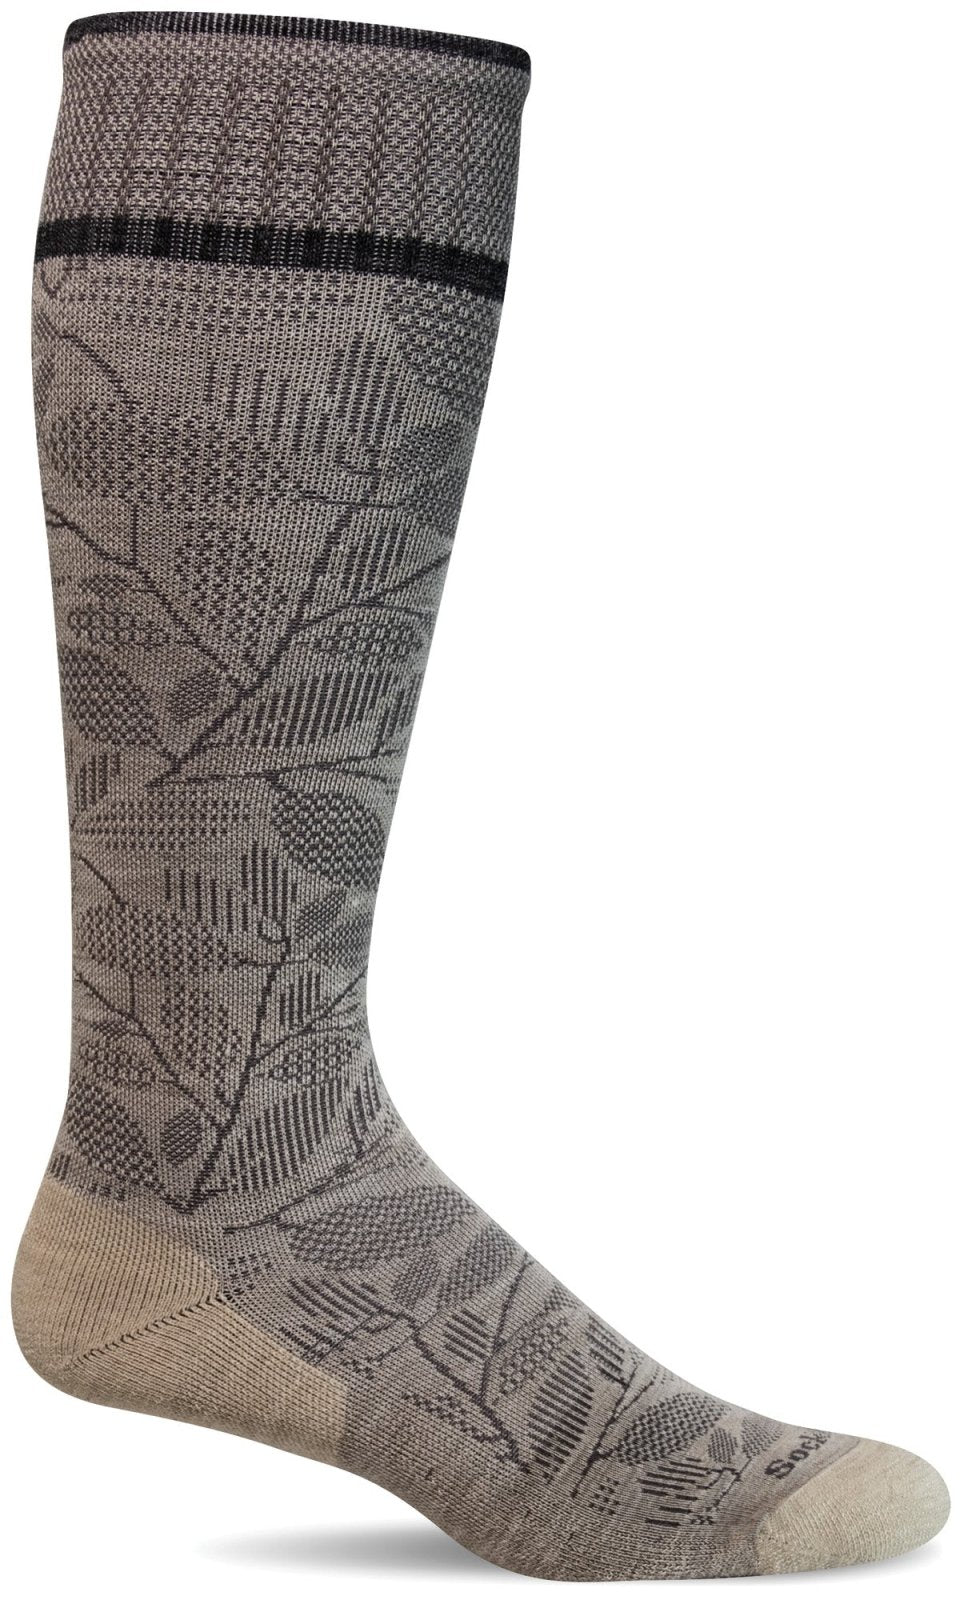 Women's Fauna | Firm Graduated Compression Socks - Merino Wool - Sockwell